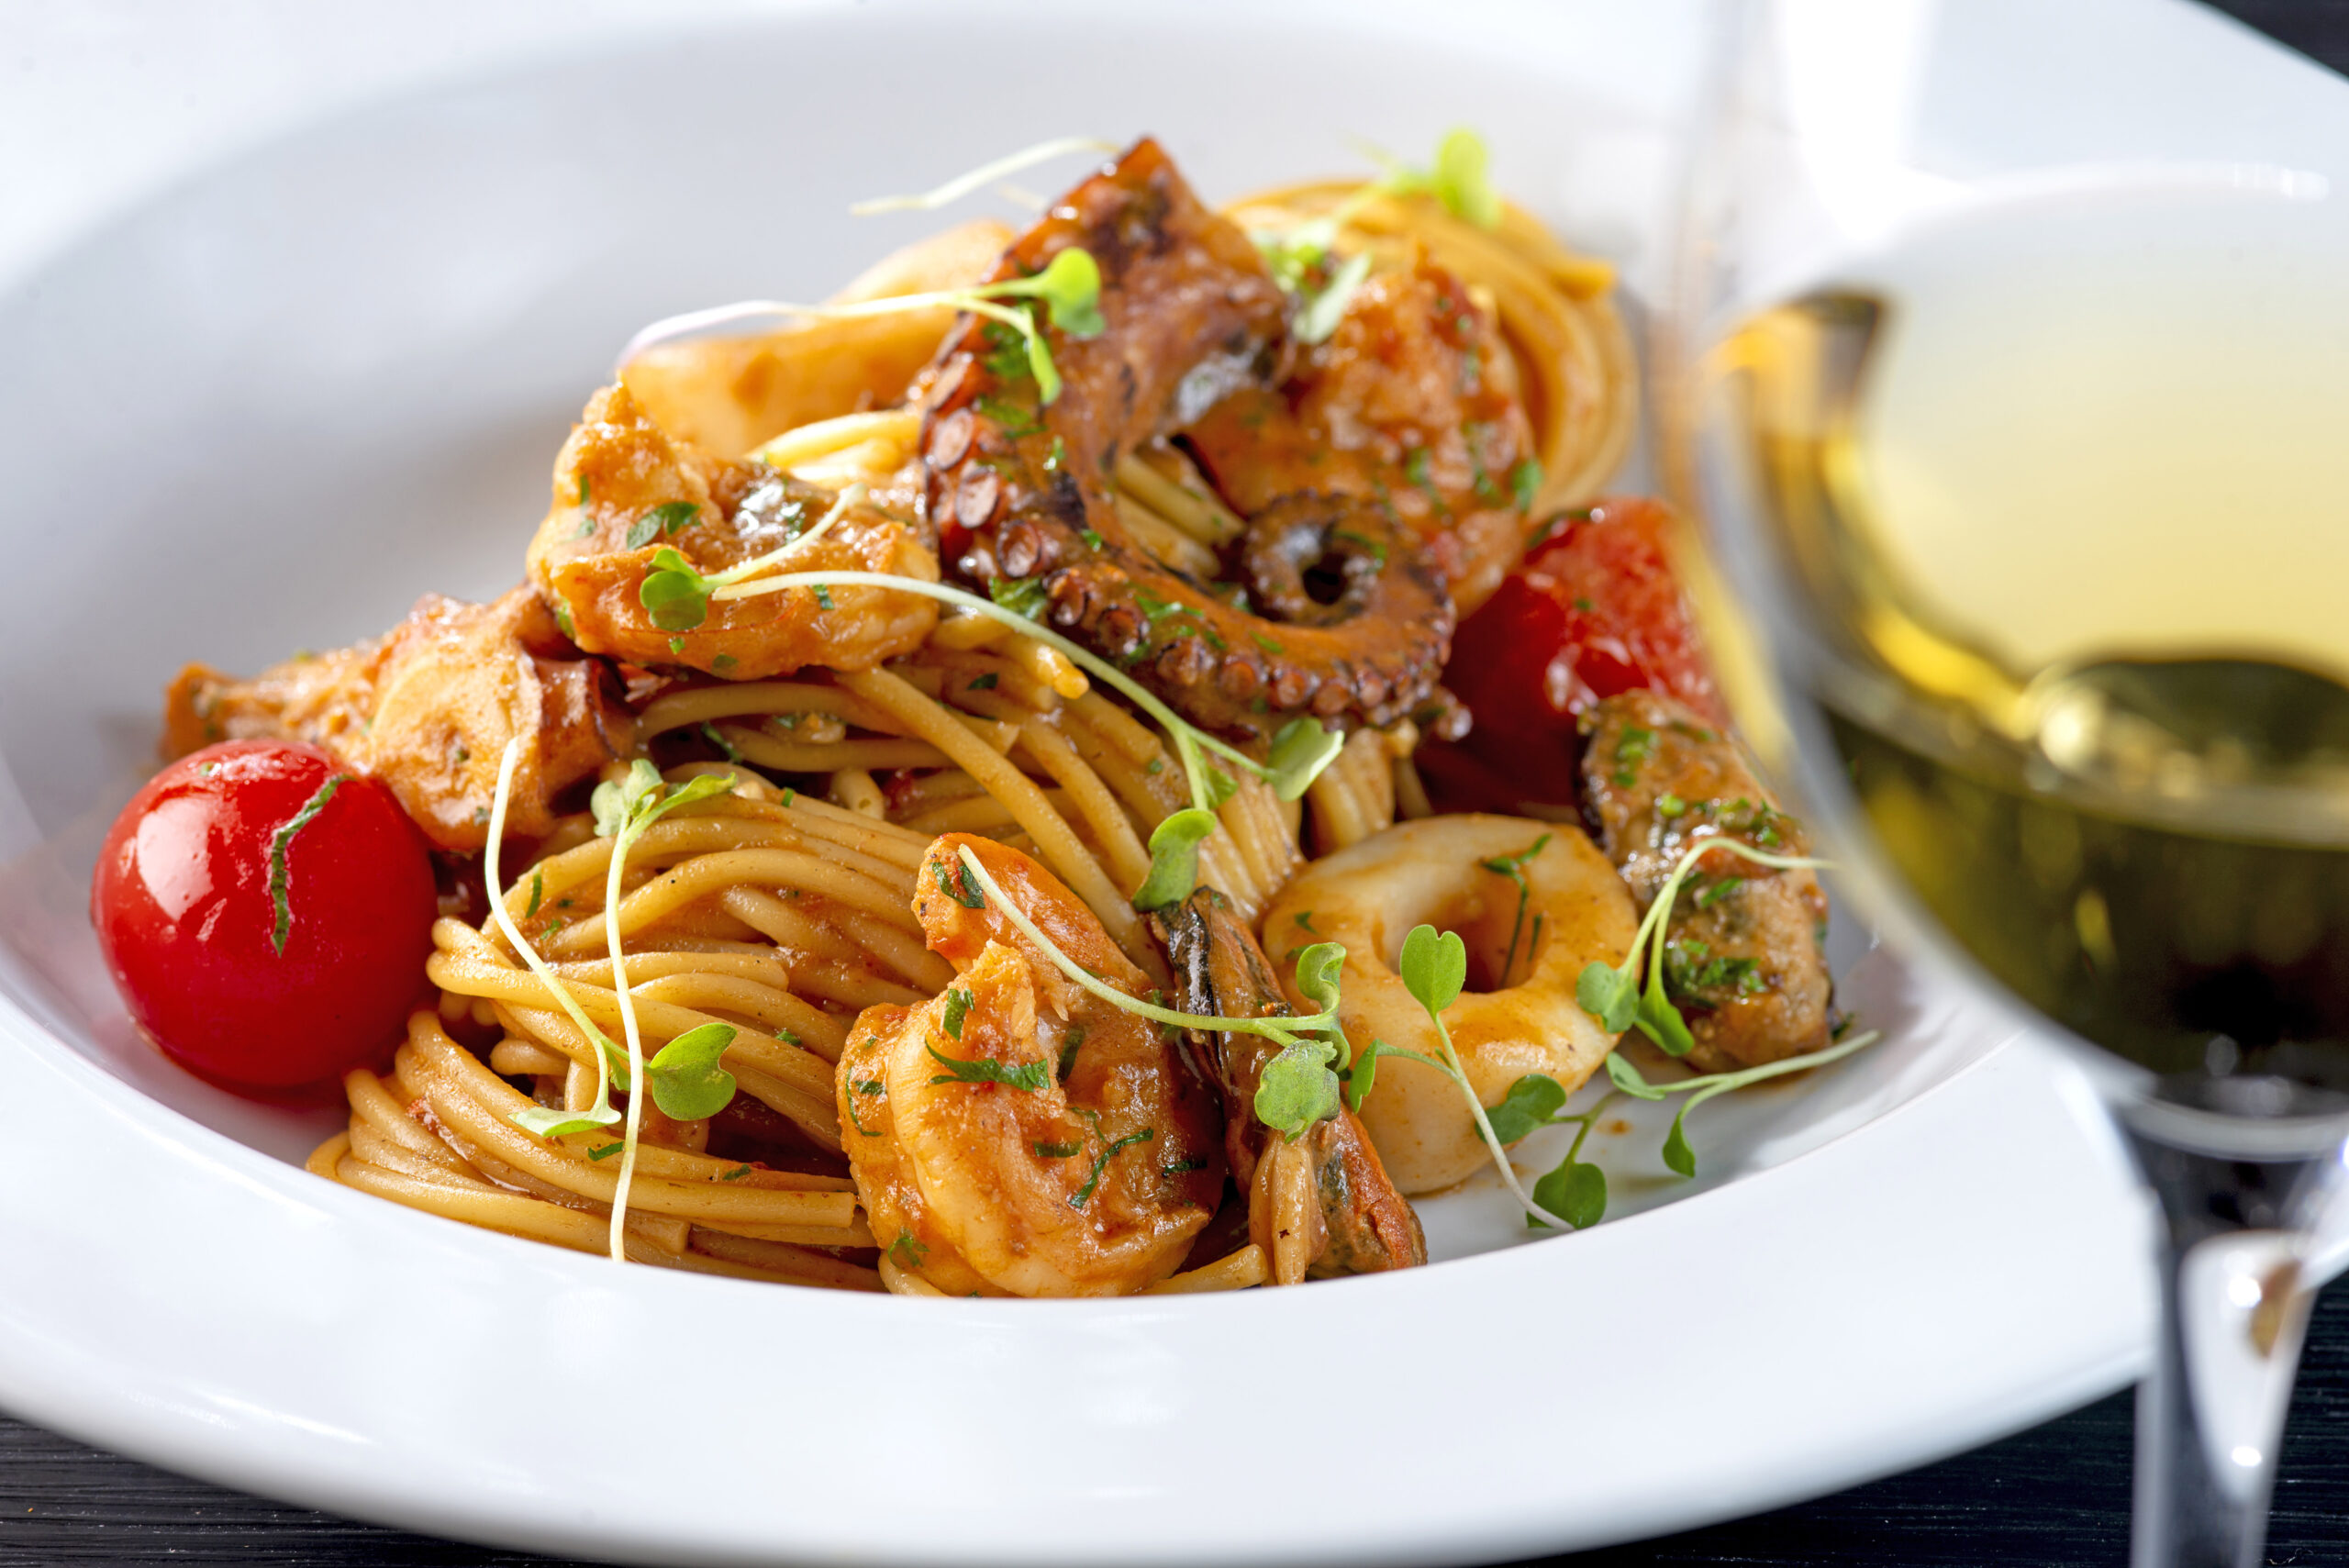 Chef do restaurante italiano Trattoria Alloro ensina receita de massa com frutos do mar